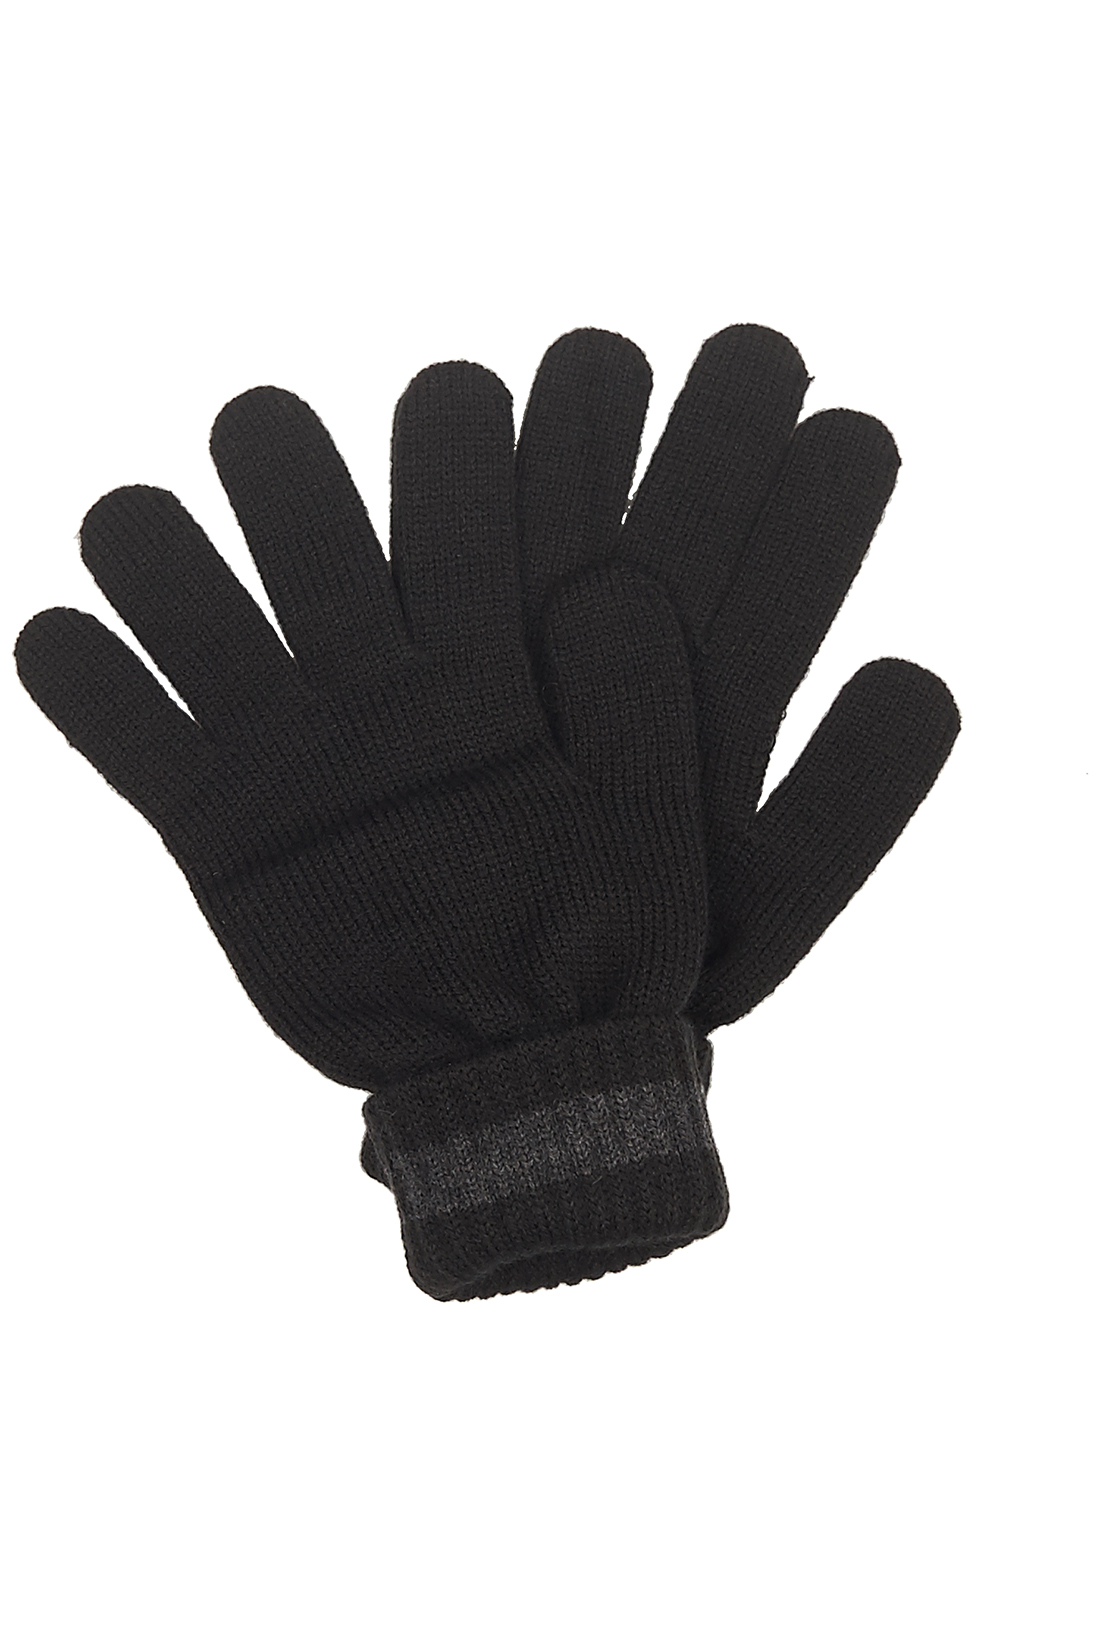 Перчатки с манжетами-отворотами (арт. baon B868502), размер Без/раз, цвет черный